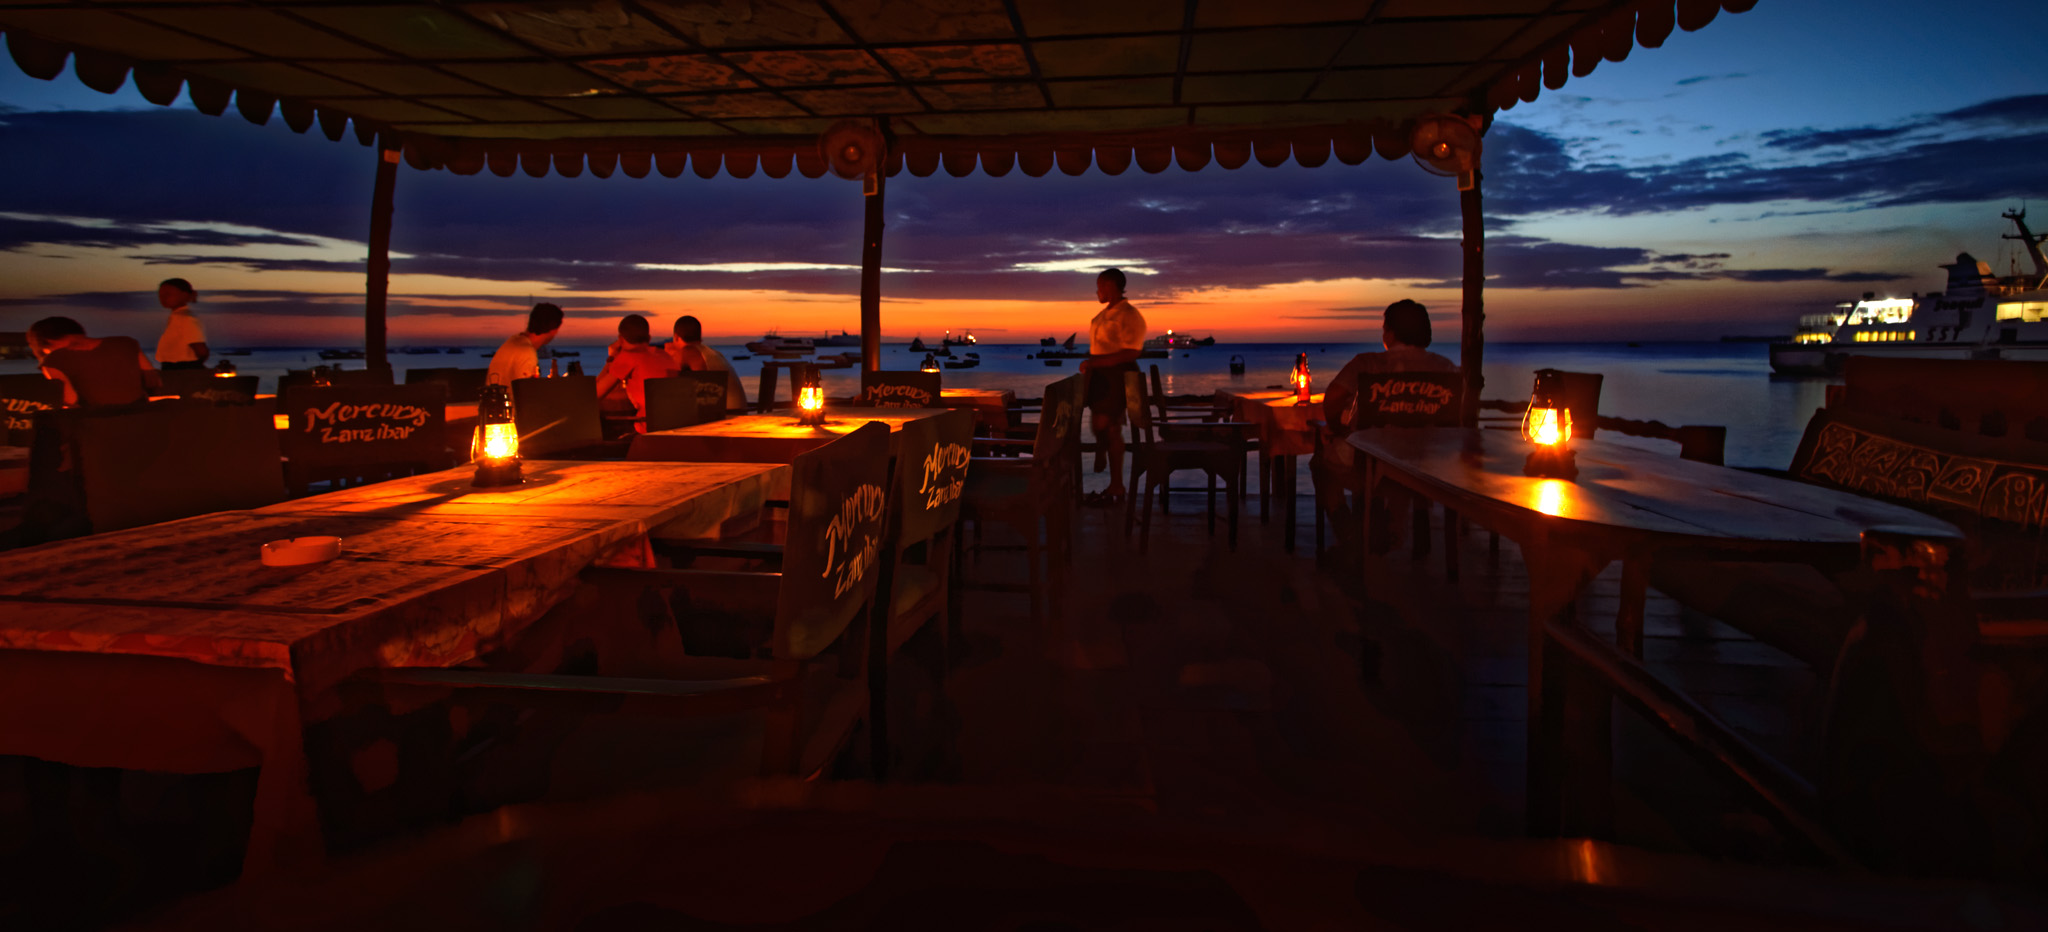 Zanzibar sunset Mercury's Bar